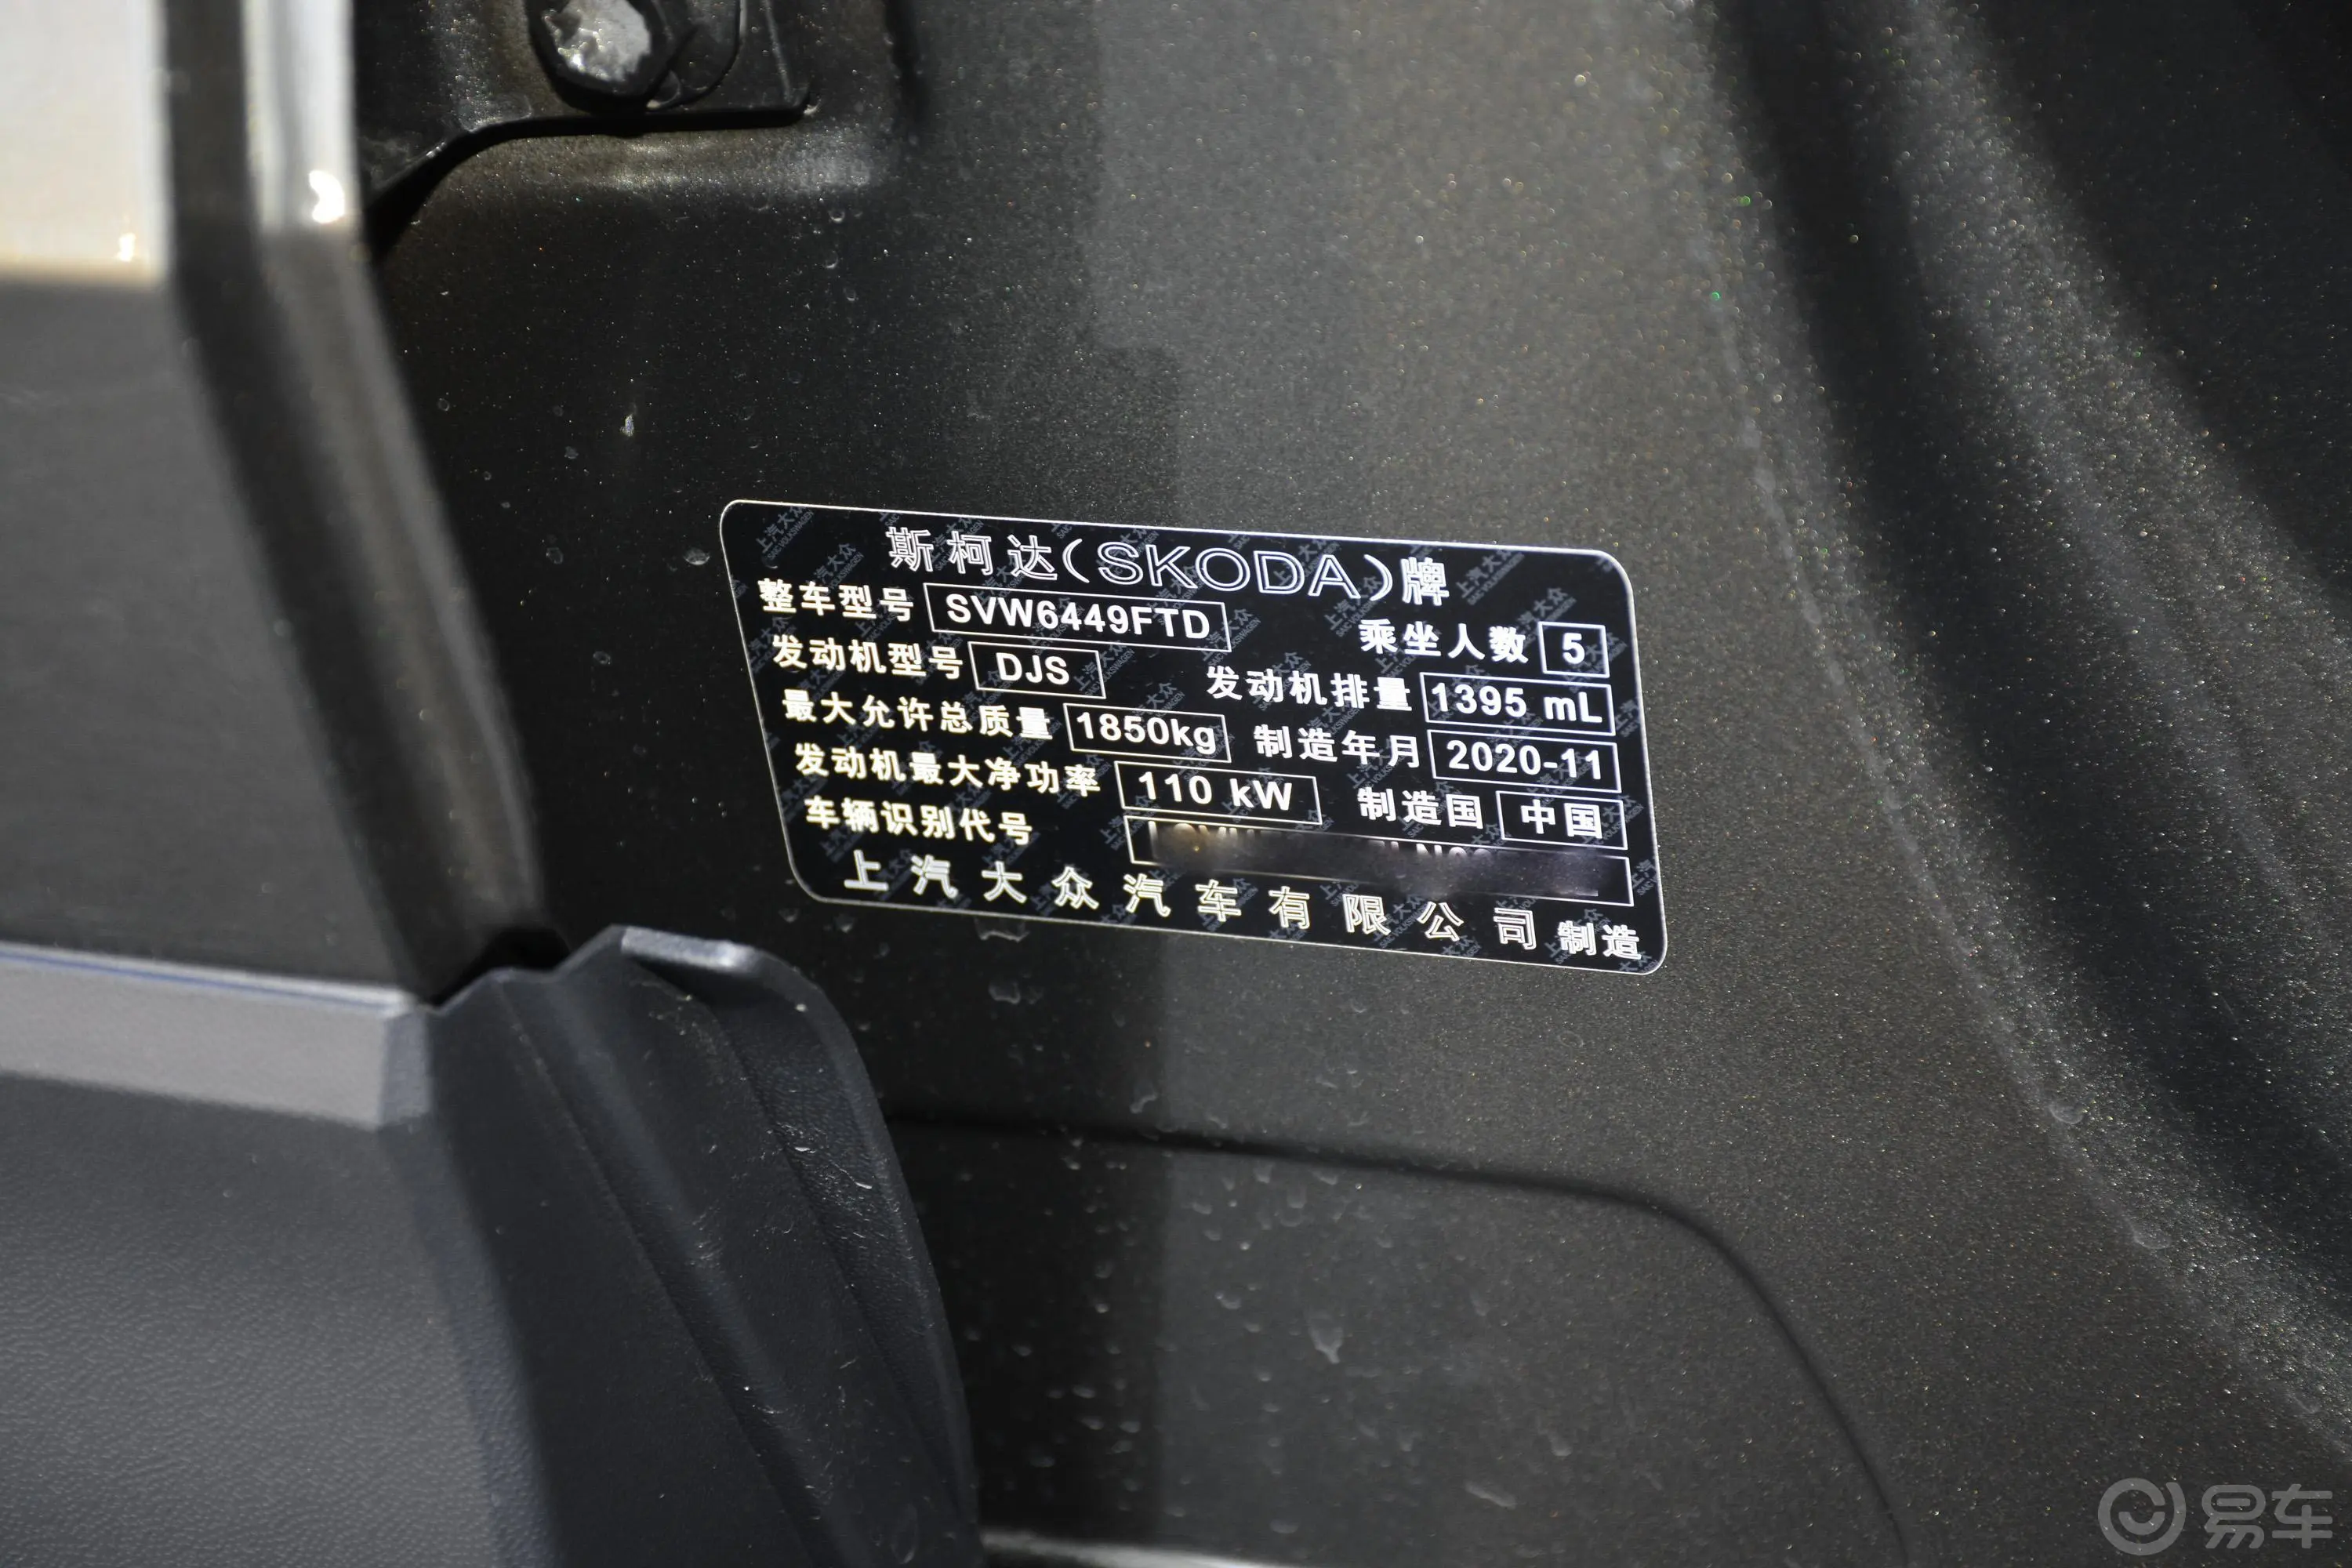 柯珞克TSI280 豪华版车辆信息铭牌